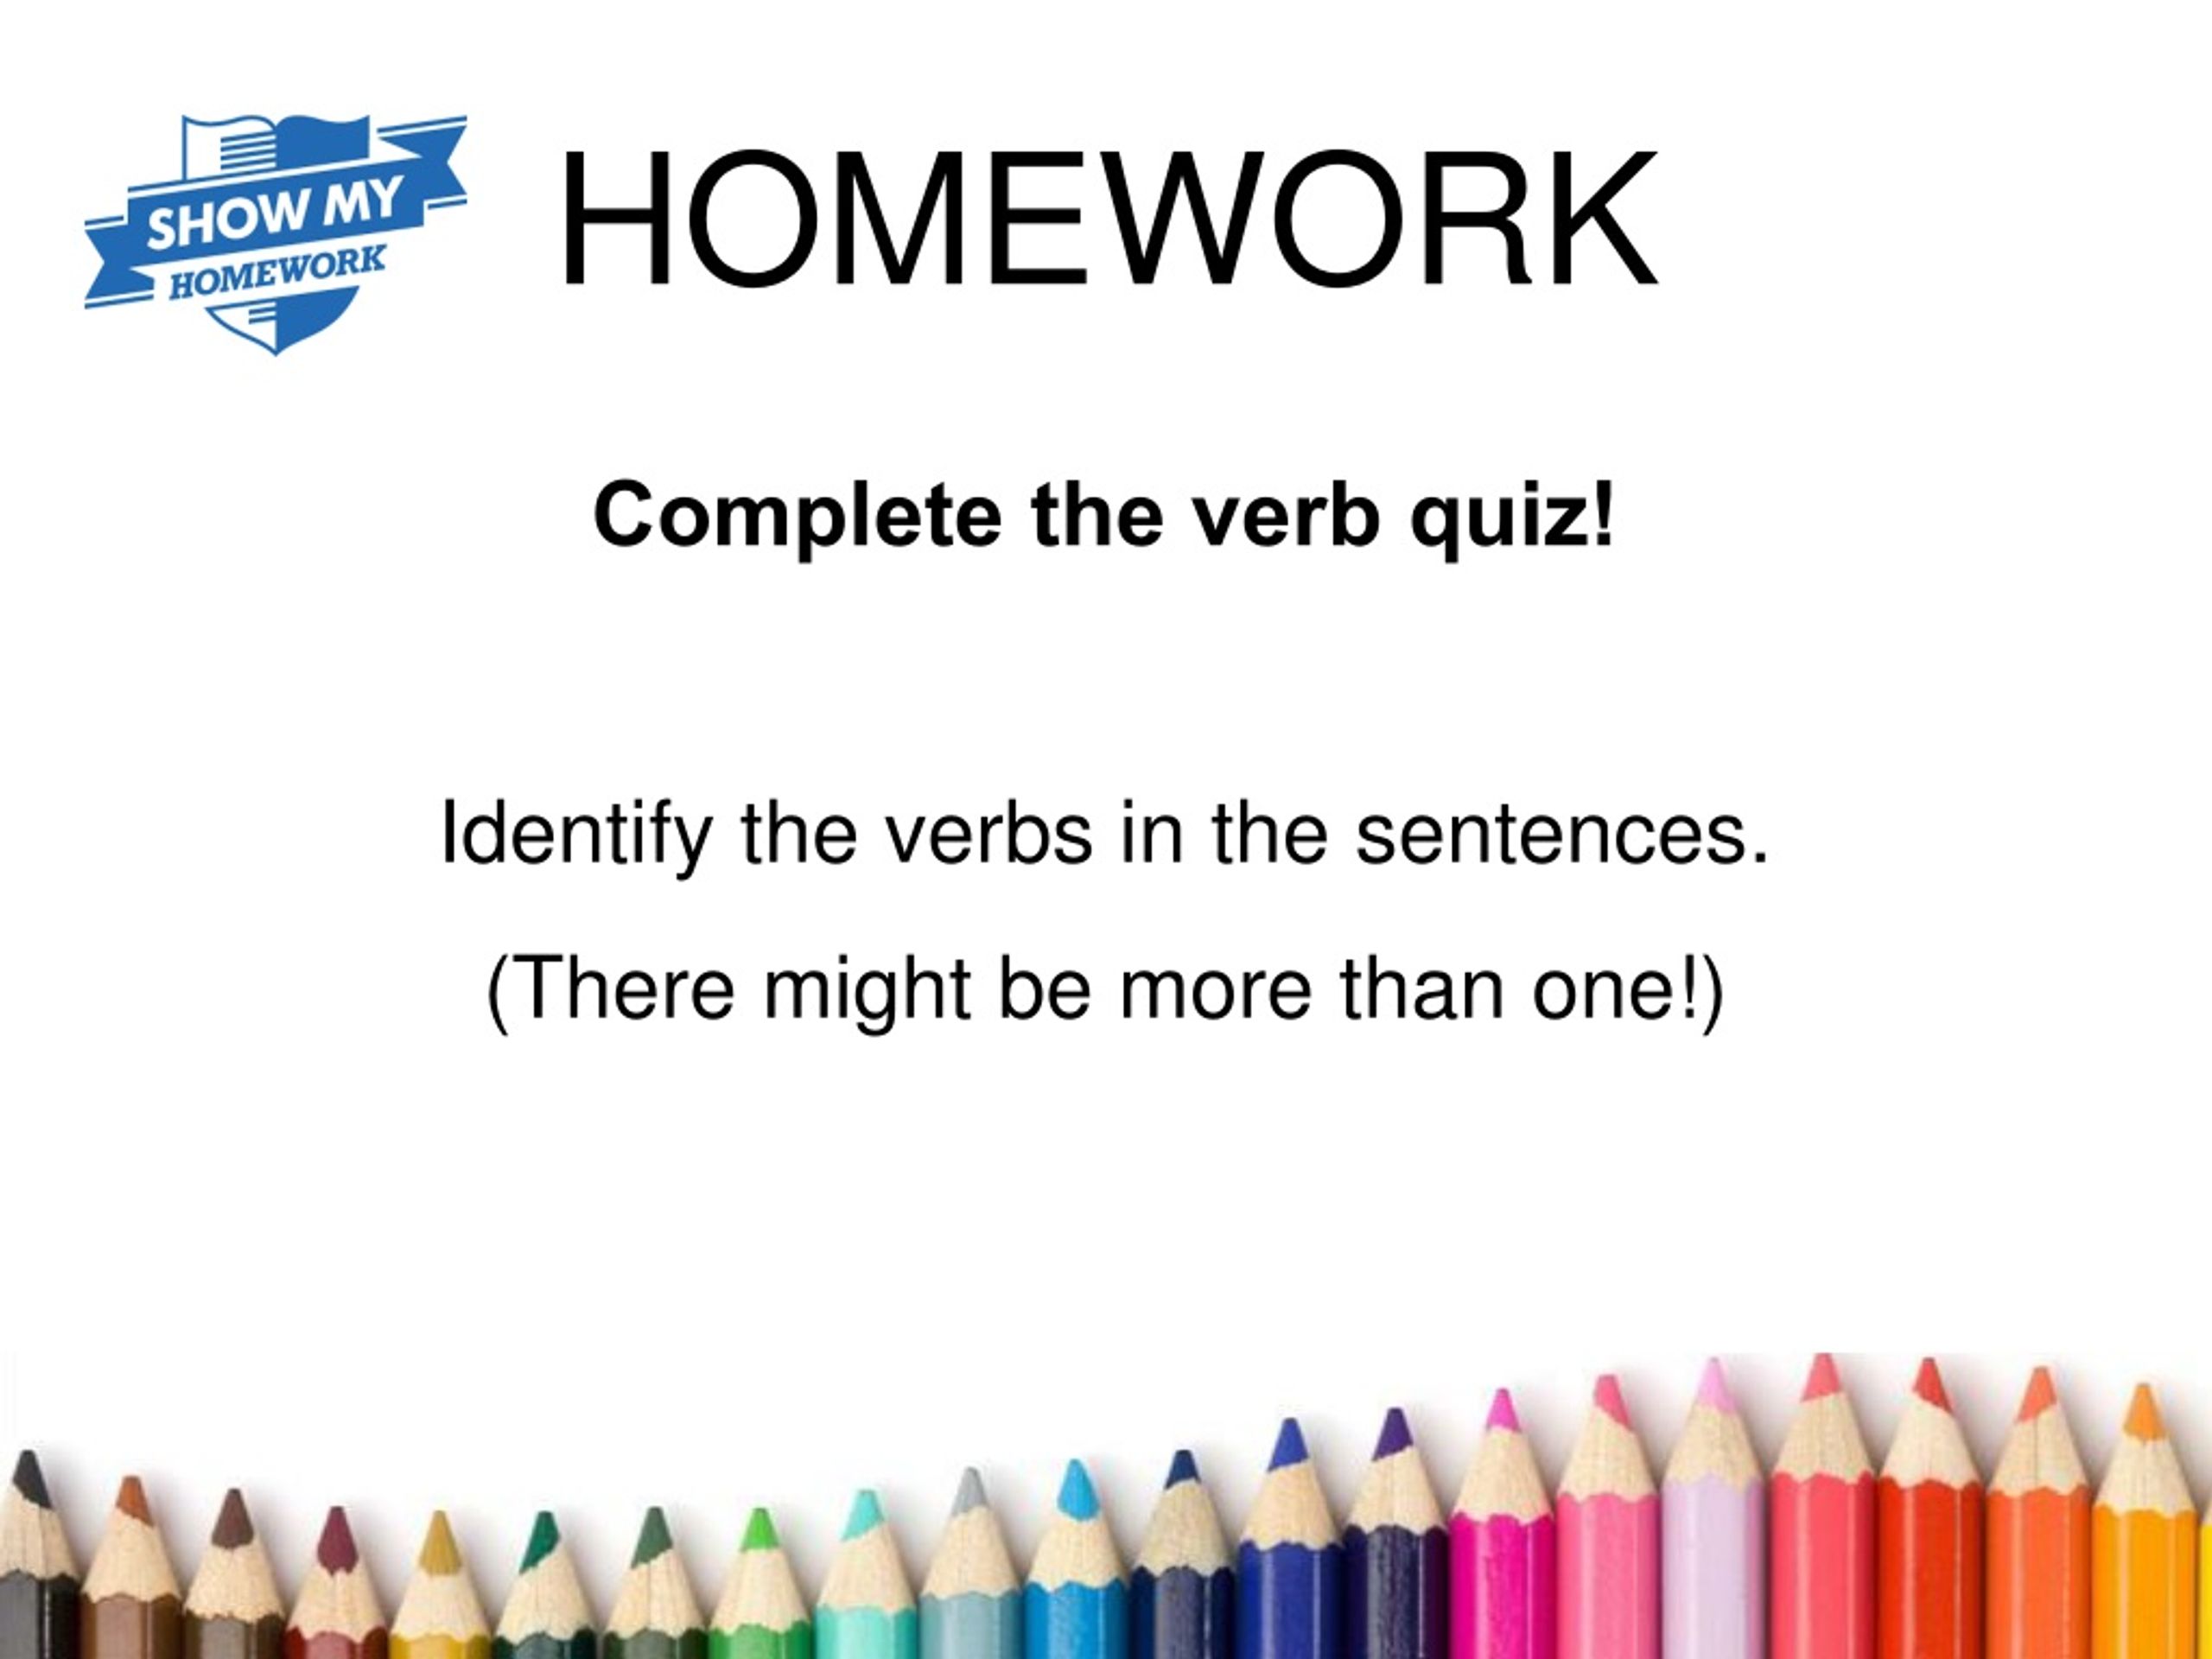 is word homework a verb